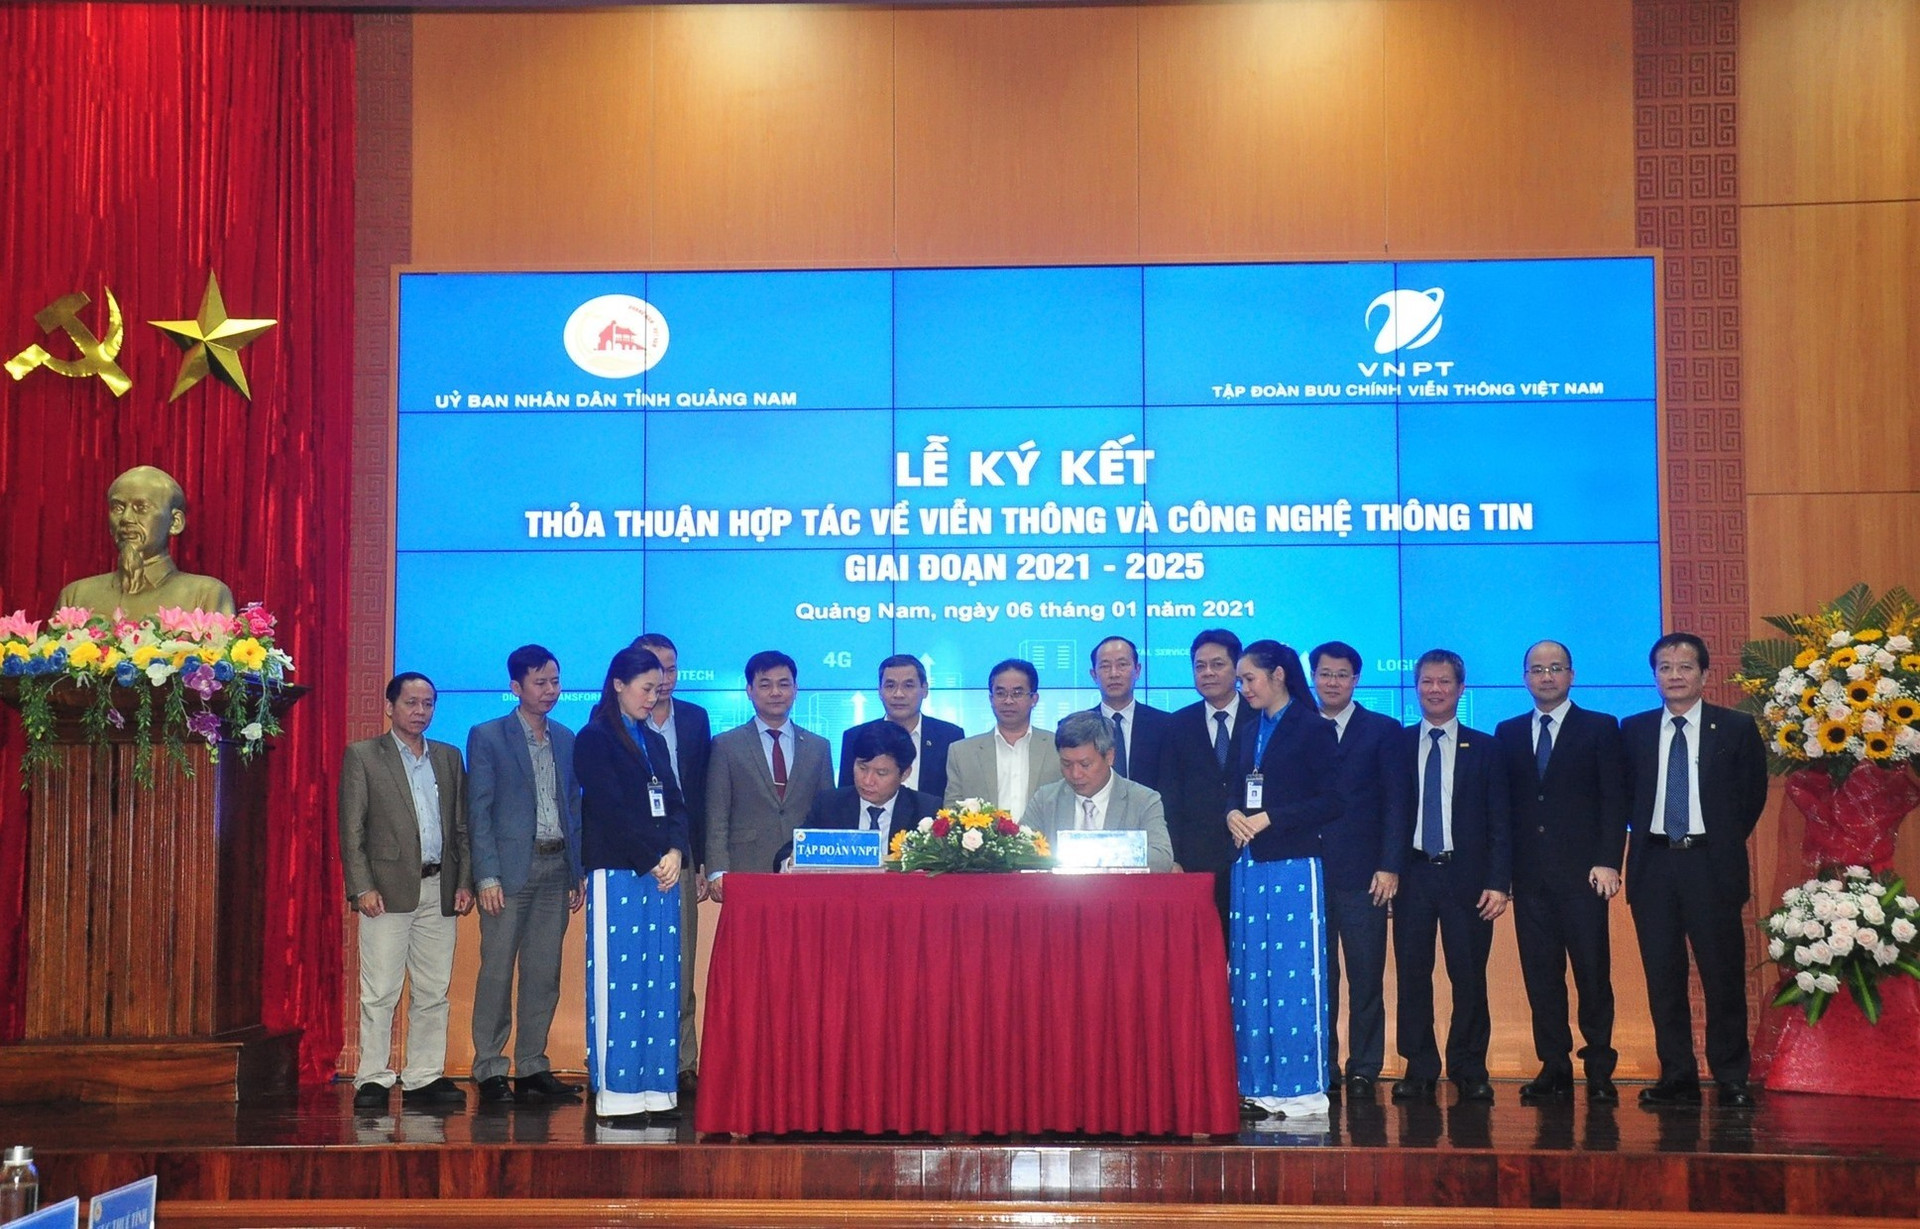 UBND tỉnh và Tập đoàn Bưu chính - Viễn thông Việt Nam (VNPT) tổ chức Lễ ký kết thỏa thuận hợp tác về viễn thông và công nghệ thông tin (VT-CNTT) giai đoạn 2021 - 2025. Ảnh: VINH ANH